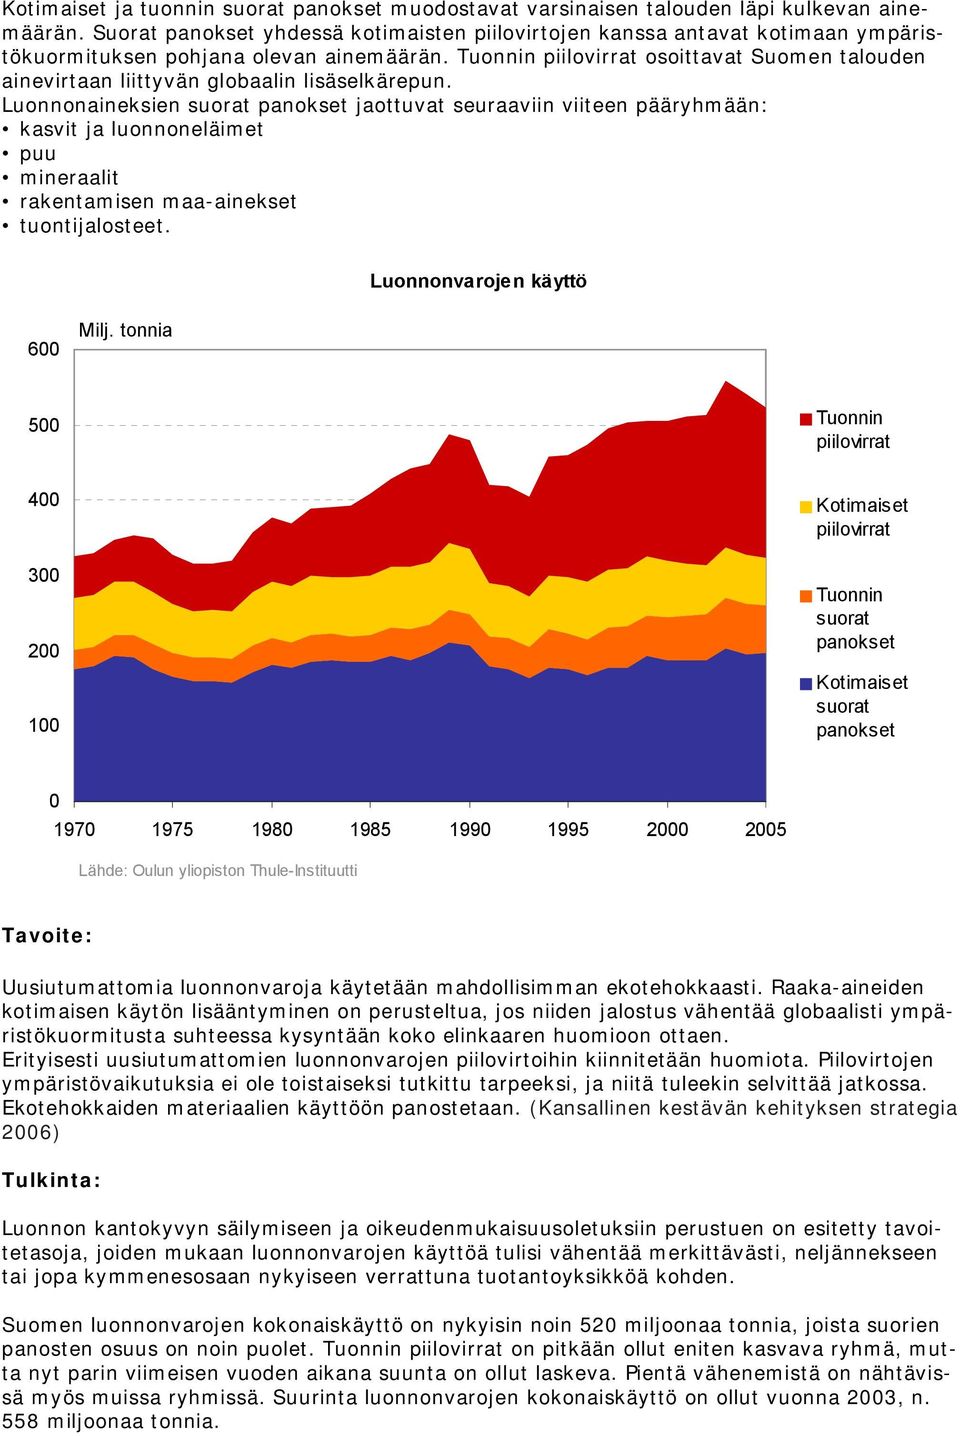 Tuonnin piilovirrat osoittavat Suomen talouden ainevirtaan liittyvän globaalin lisäselkärepun.